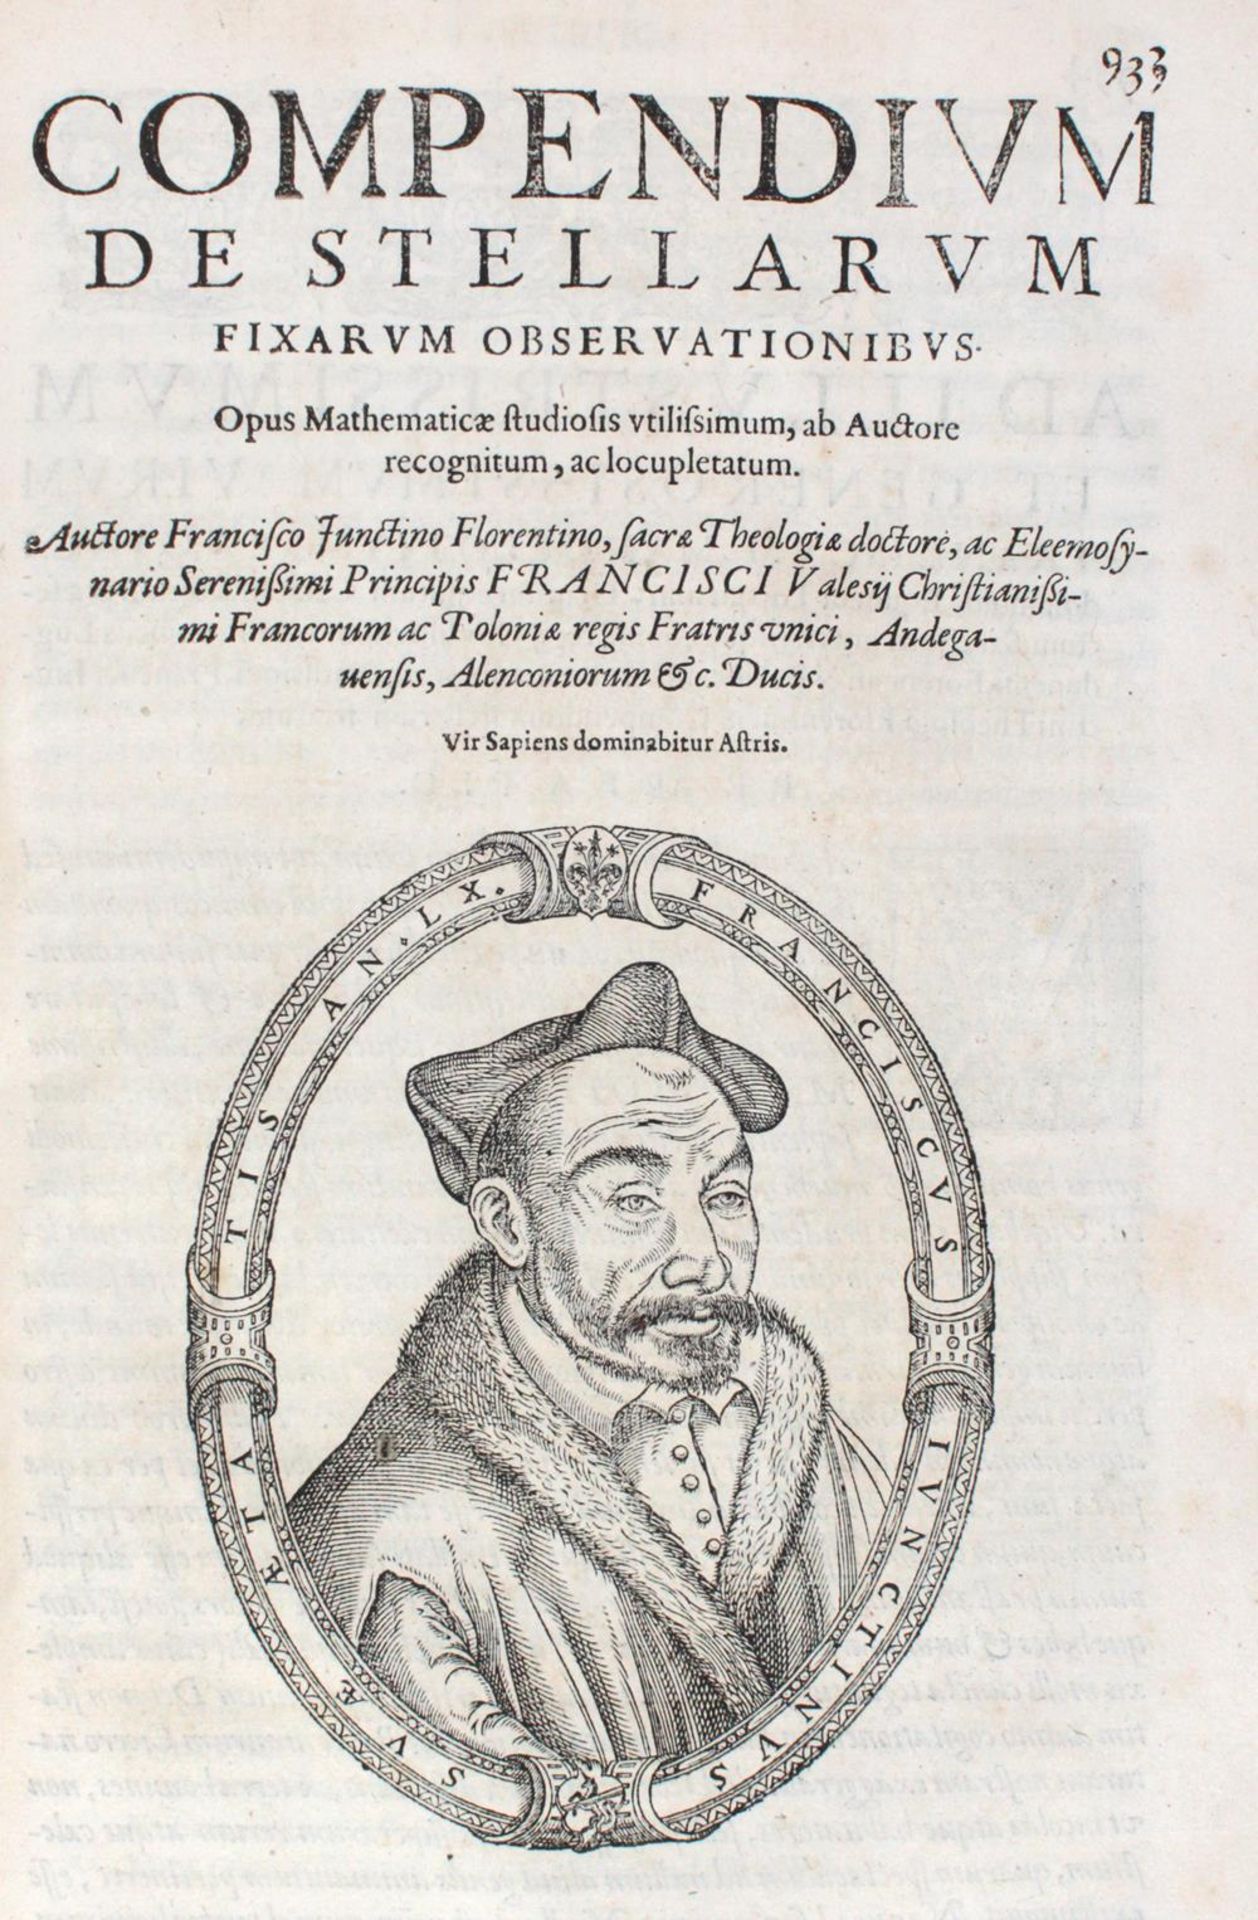 Junctinus (Giuntini),F.Junctinus (Giuntini),F. Speculum astrologiae, comprehendens commJunc